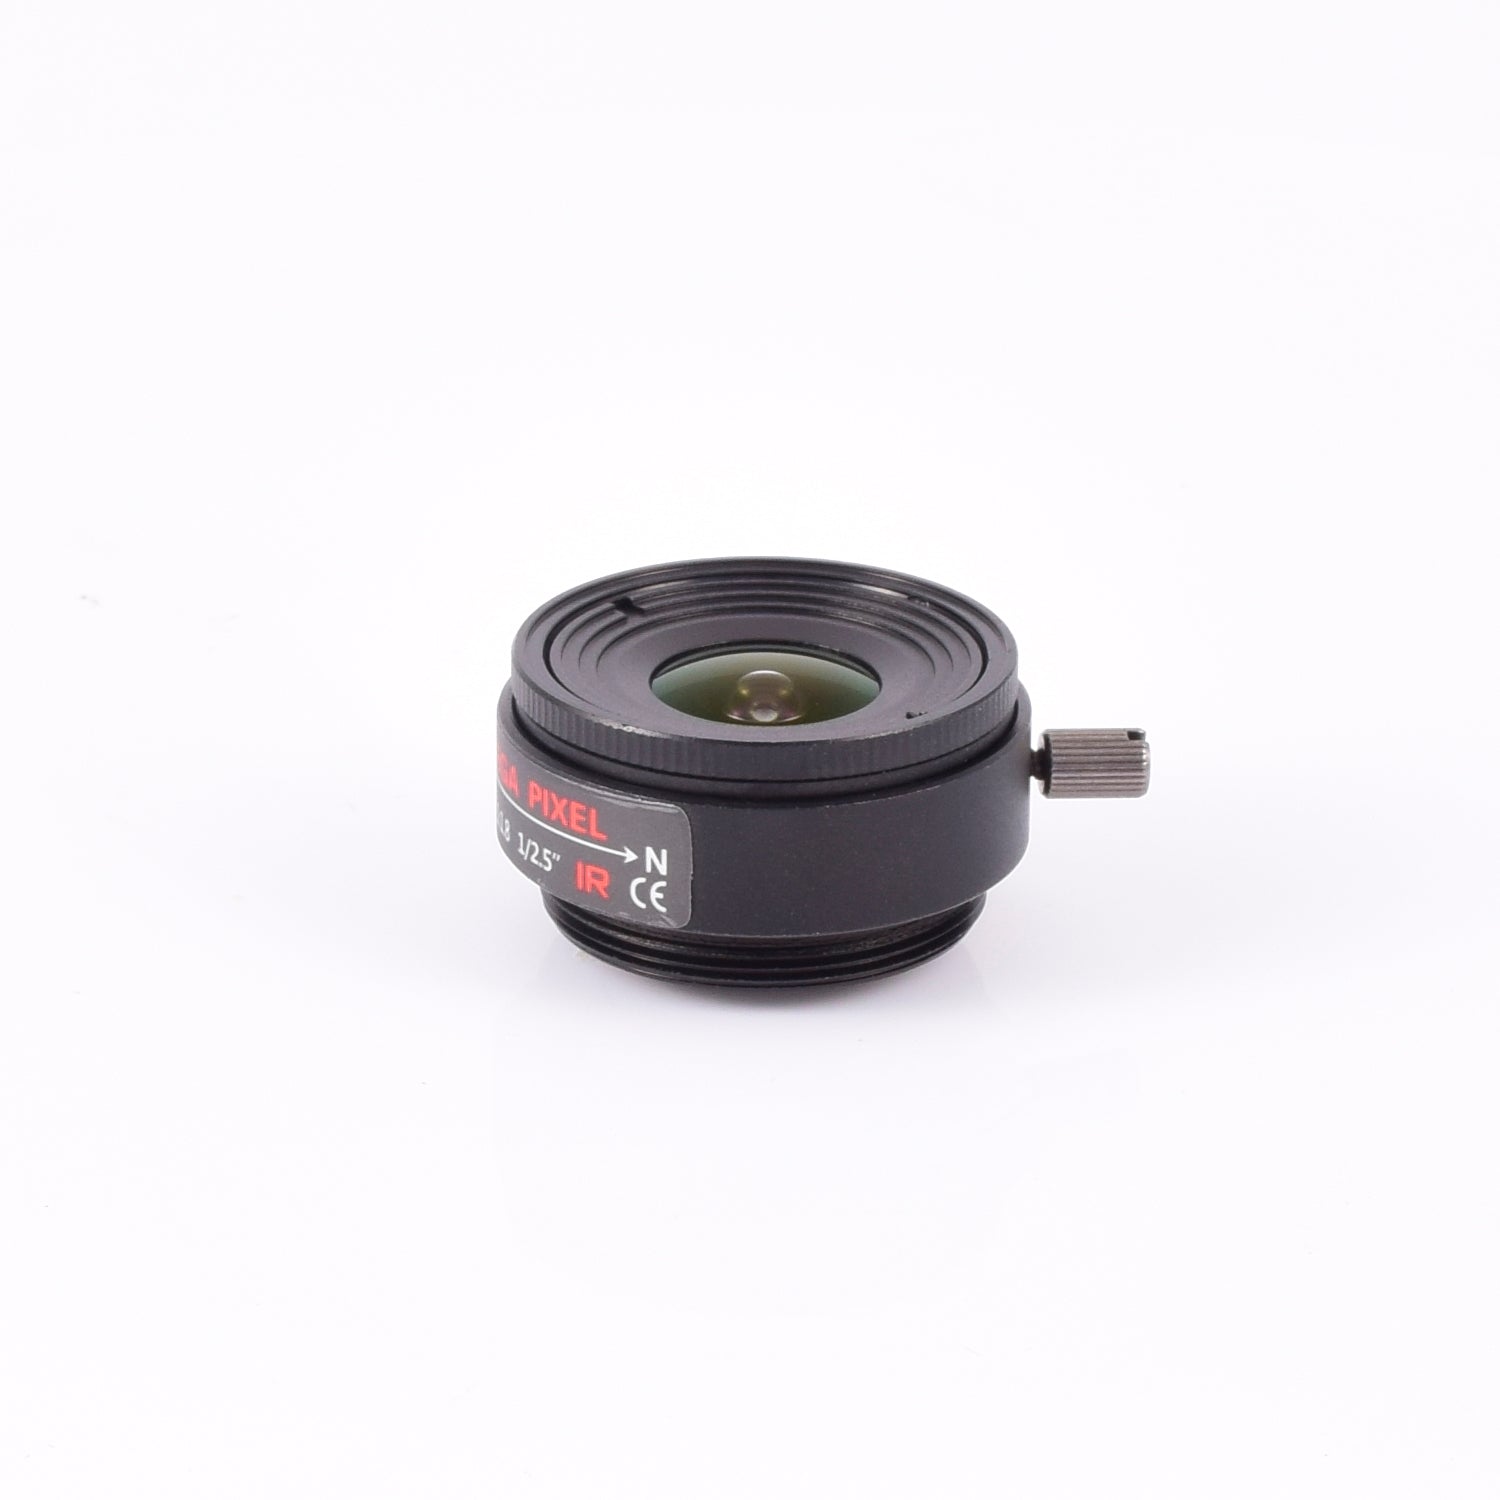 AIDA Imaging CS Mount 2.8mm Fixed Focal Mega-Pixel Lens